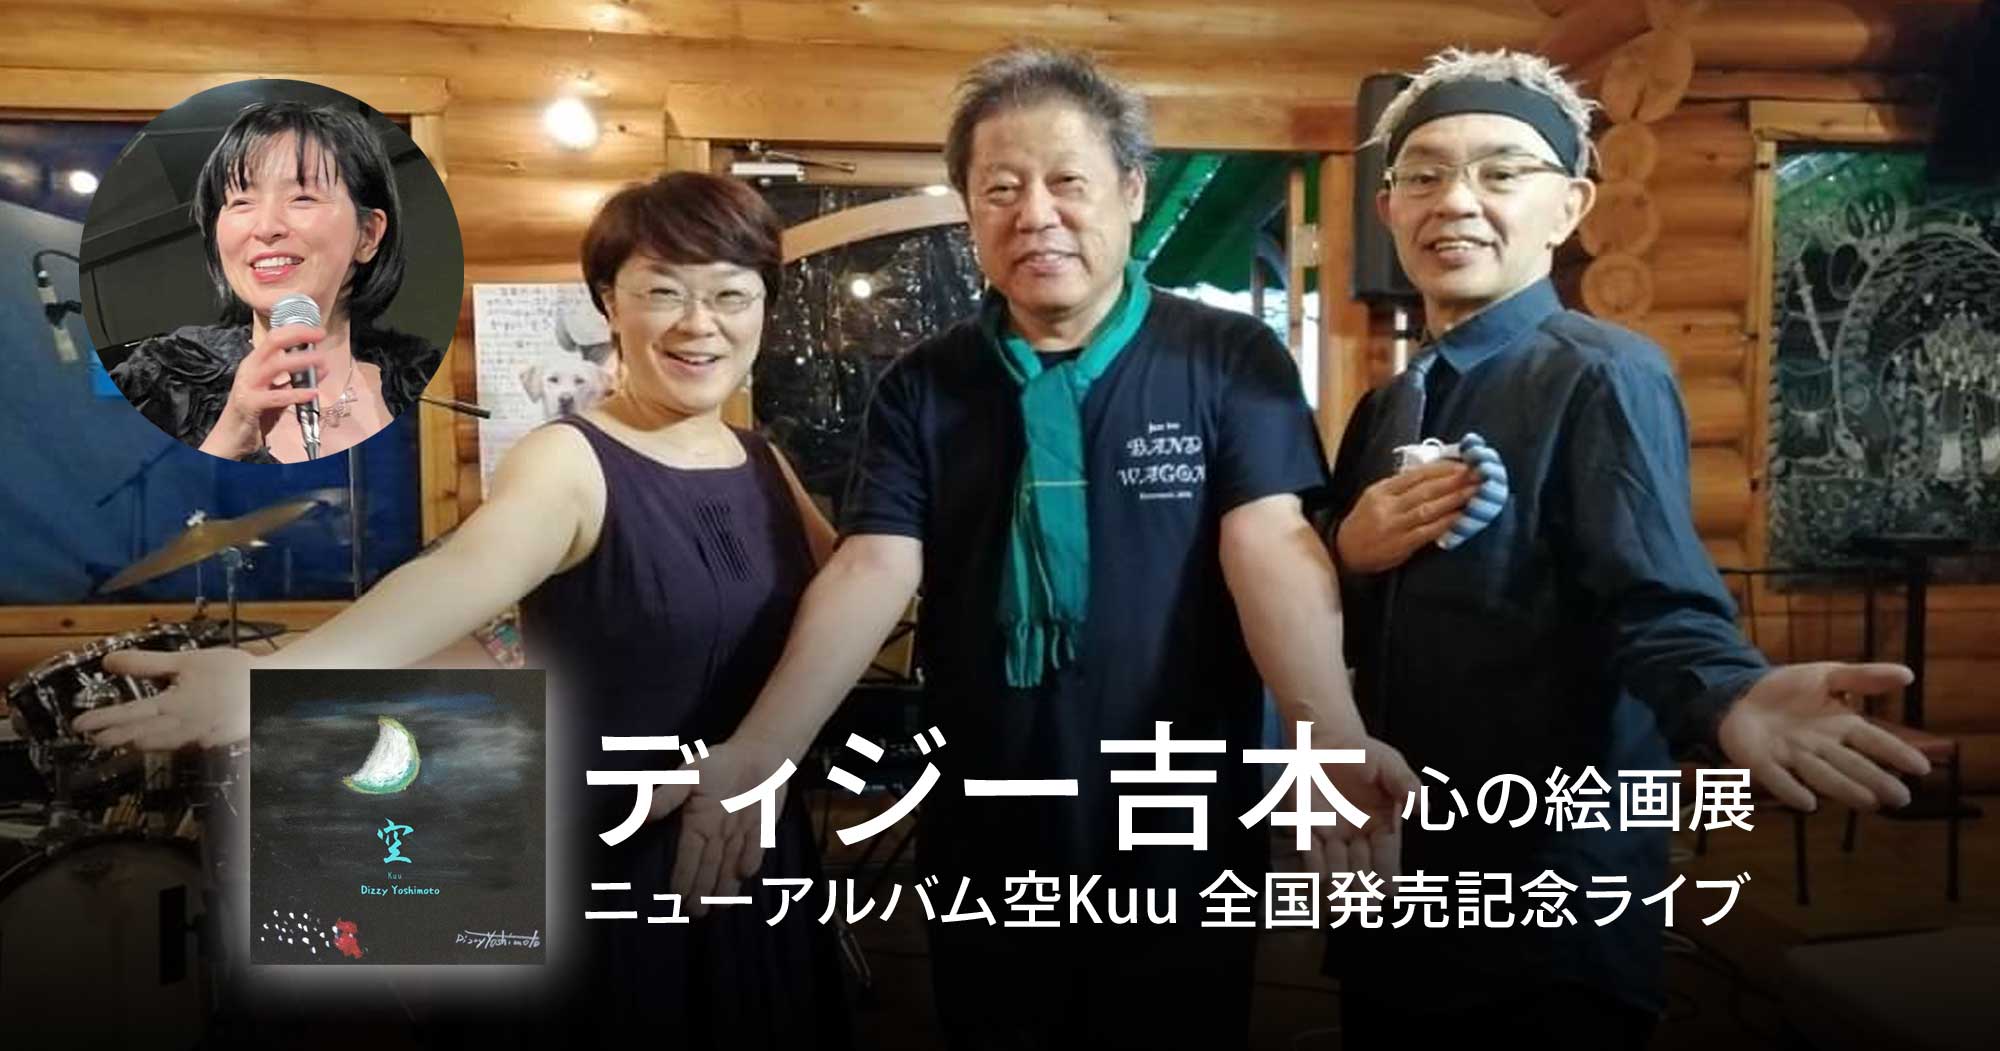 ディジー吉本 心の絵画展 ニューアルバム空Kuu 全国発売記念ライブ